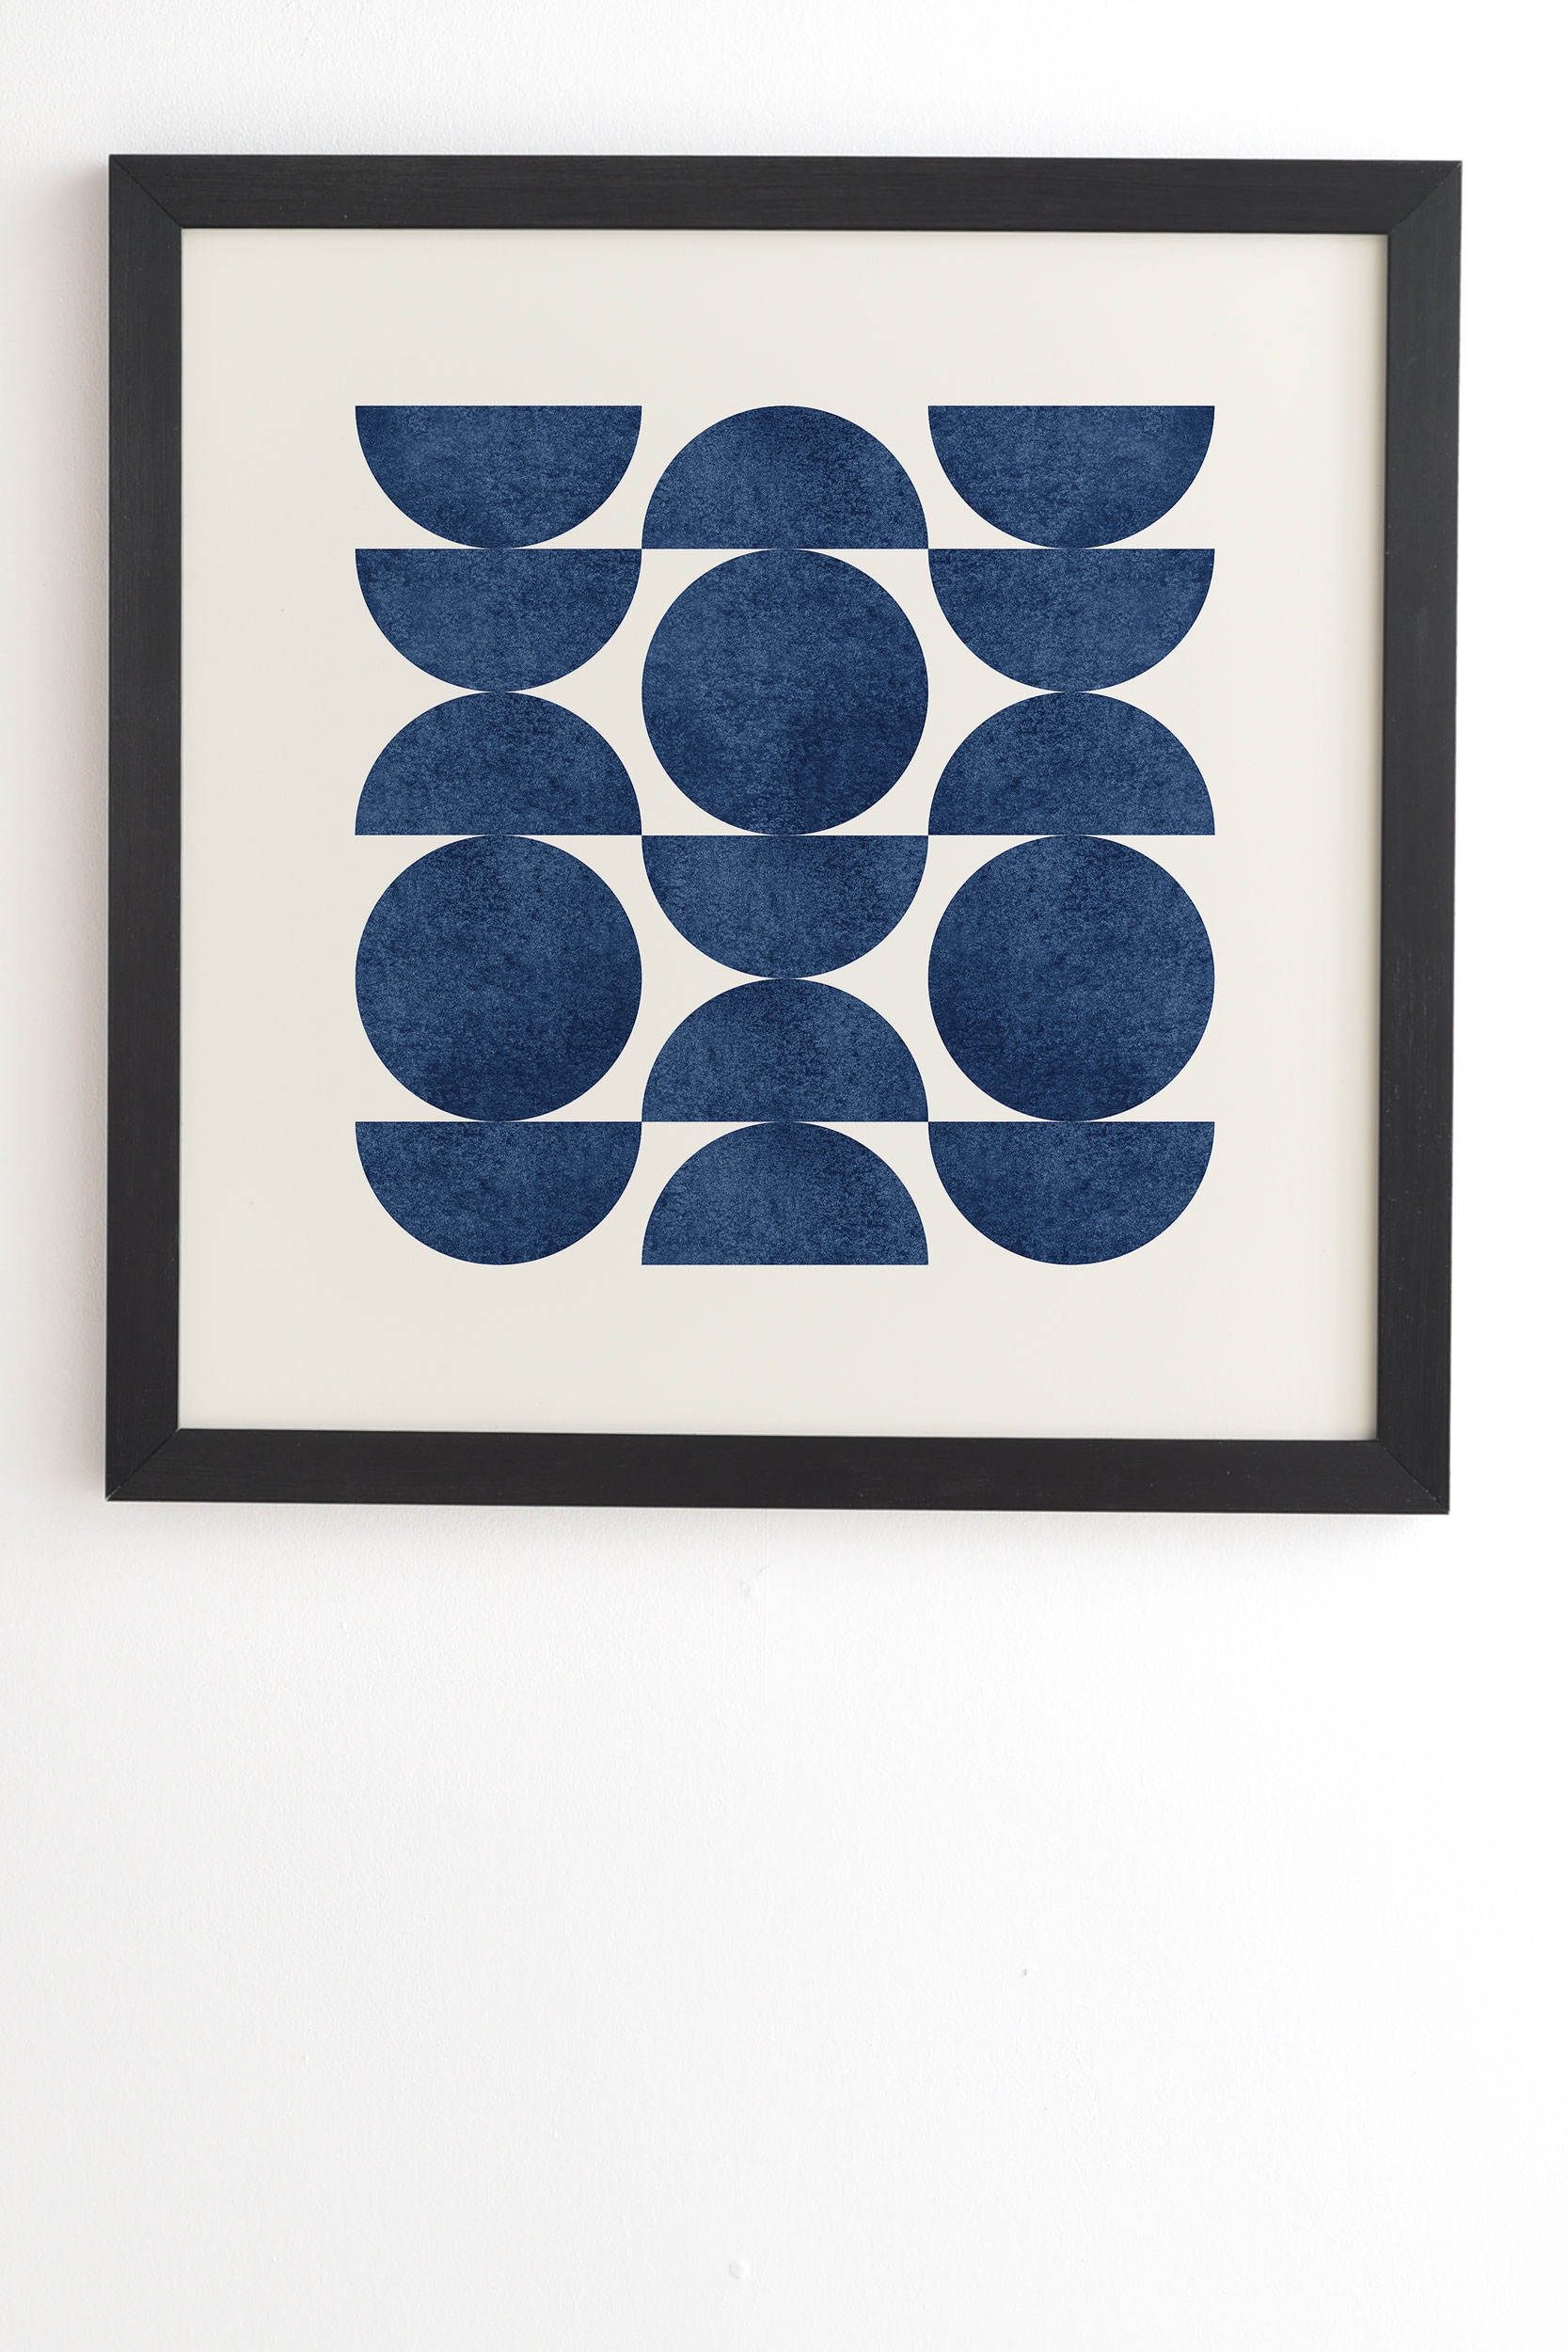 Blue Navy Retro Scandinavian Mid Century by MoonlightPrint - Framed Wall Art Basic Black 12" x 12" - Image 1